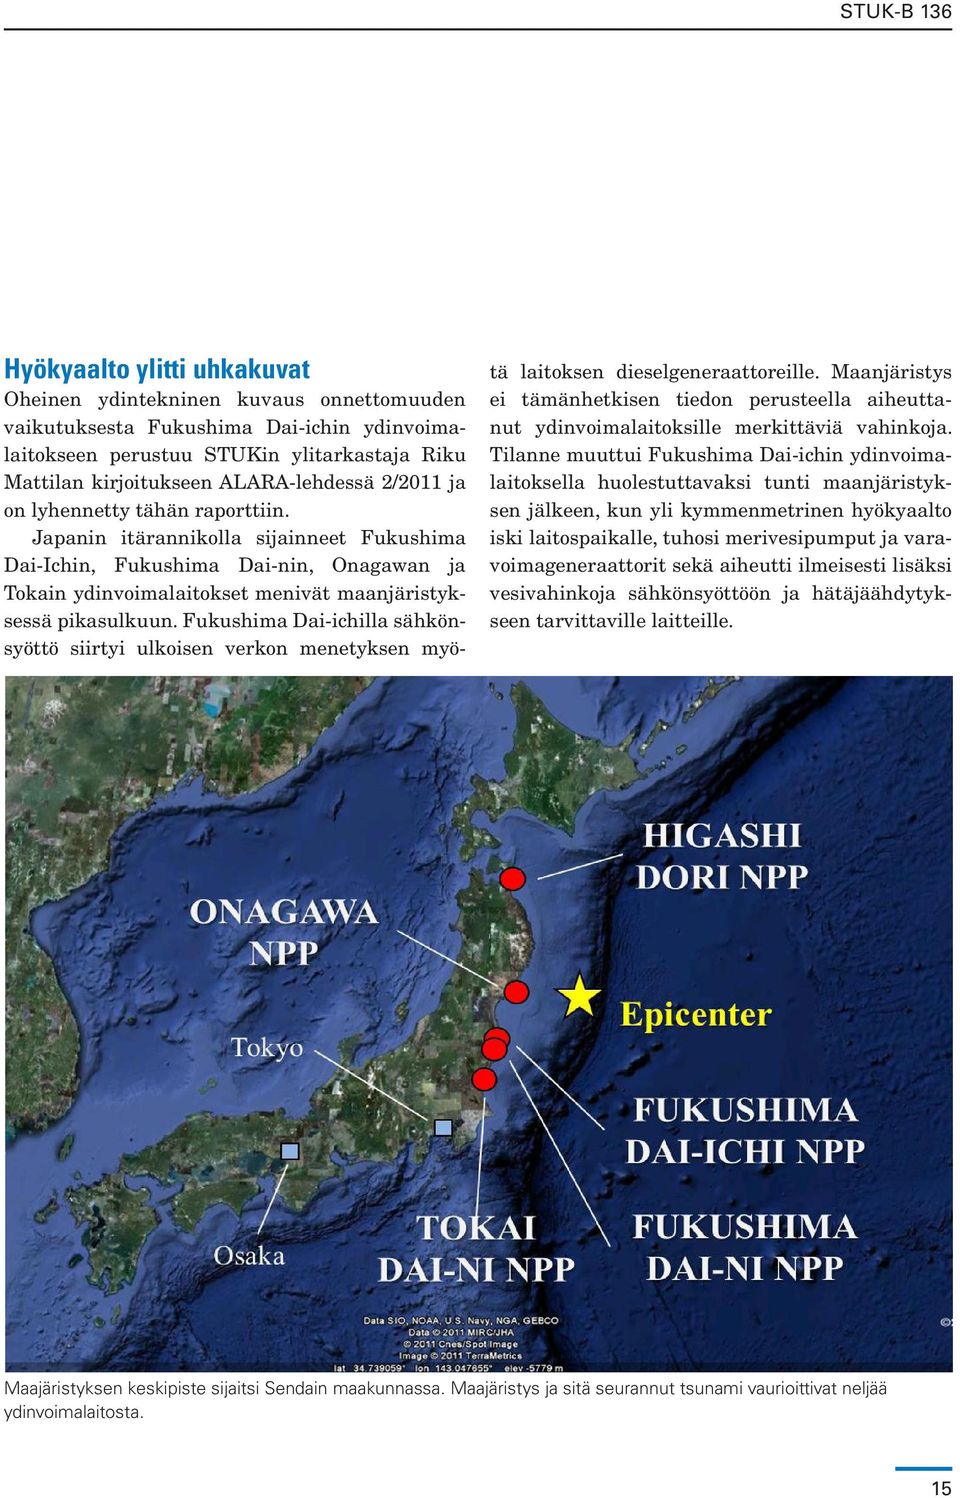 Fukushima Dai-ichilla sähkönsyöttö siirtyi ulkoisen verkon menetyksen myötä laitoksen dieselgeneraattoreille.